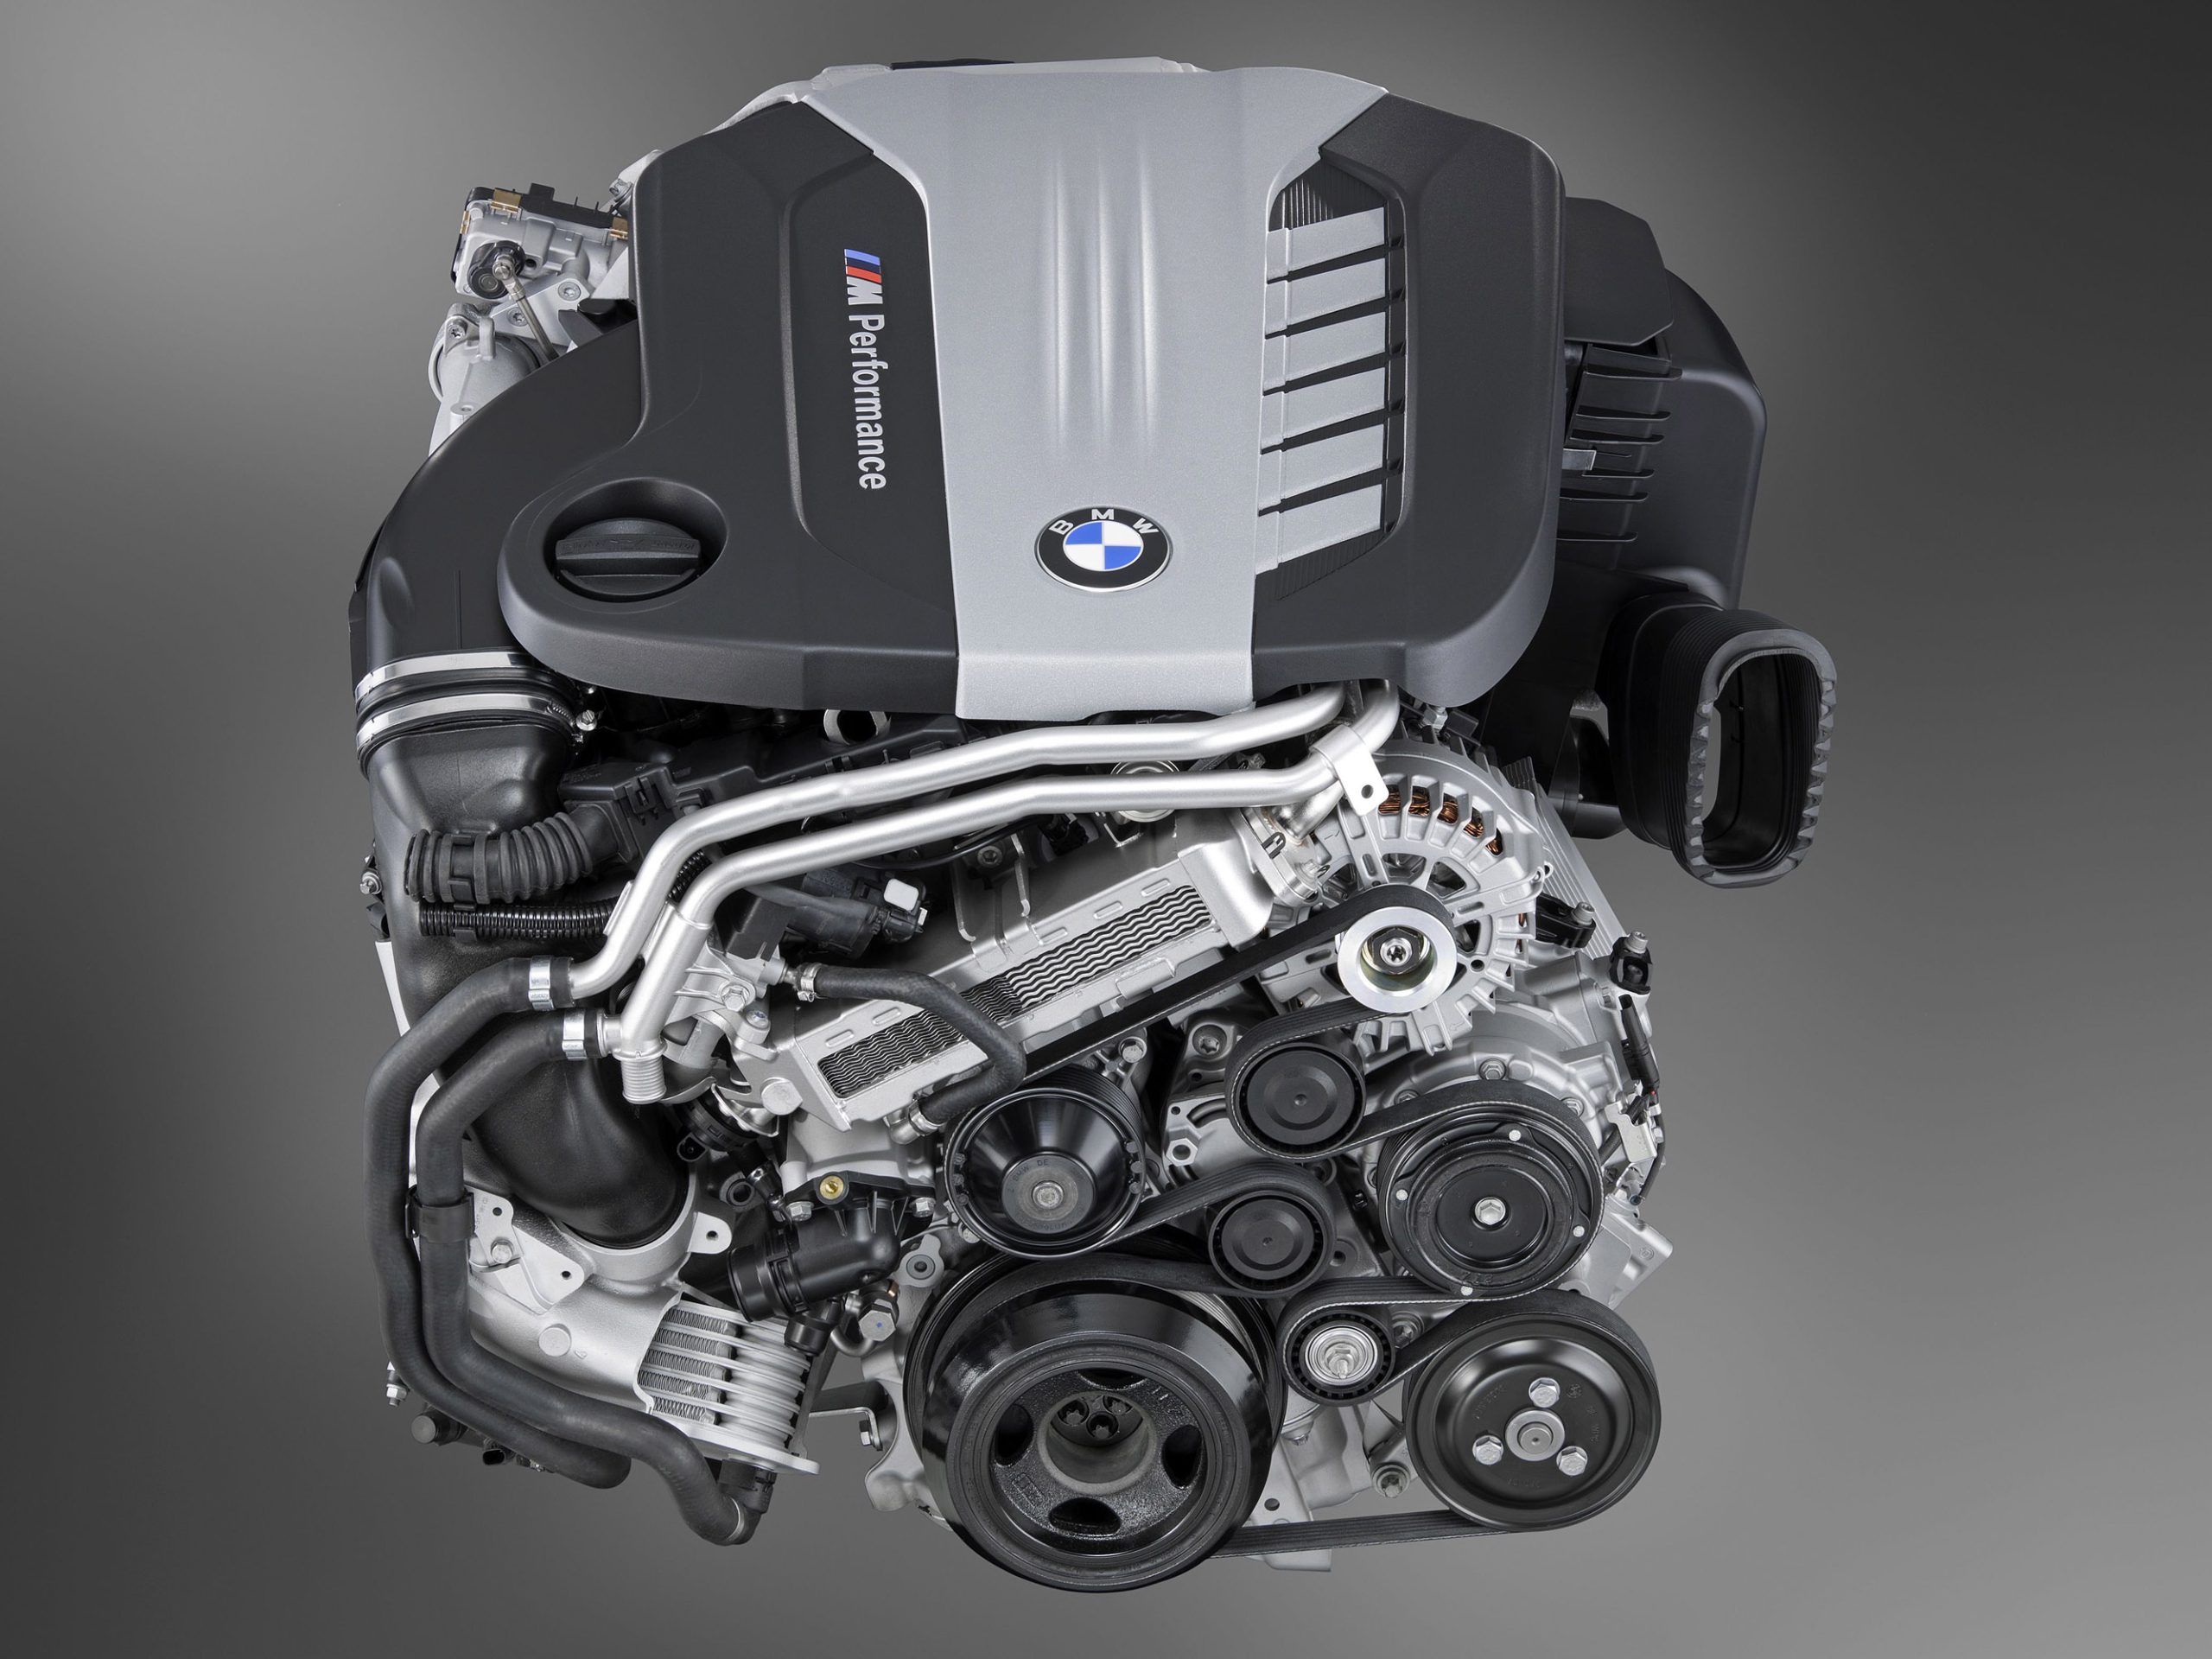 2.0 TSi motor három generációban a Volkswagentől. Mi jellemzi az EA888 család motorját?